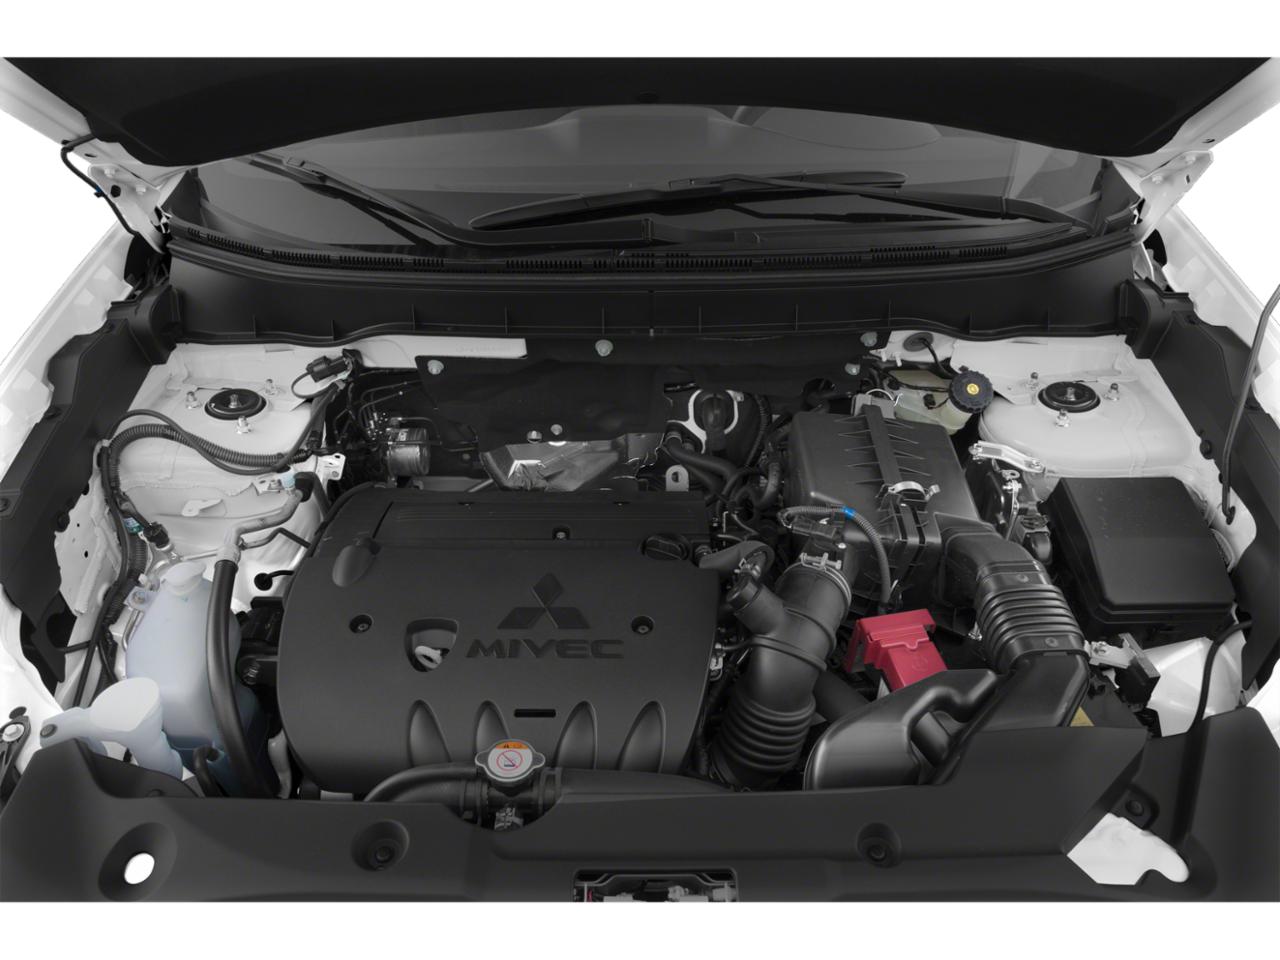 Митсубиси асх какой двигатель. Мицубиси АСХ двигатель 2.0. Двигатель Mitsubishi ASX 1.6 2013. Двигатель Мицубиси АСХ 1.6. Митсубиси АСХ двигатель 2.